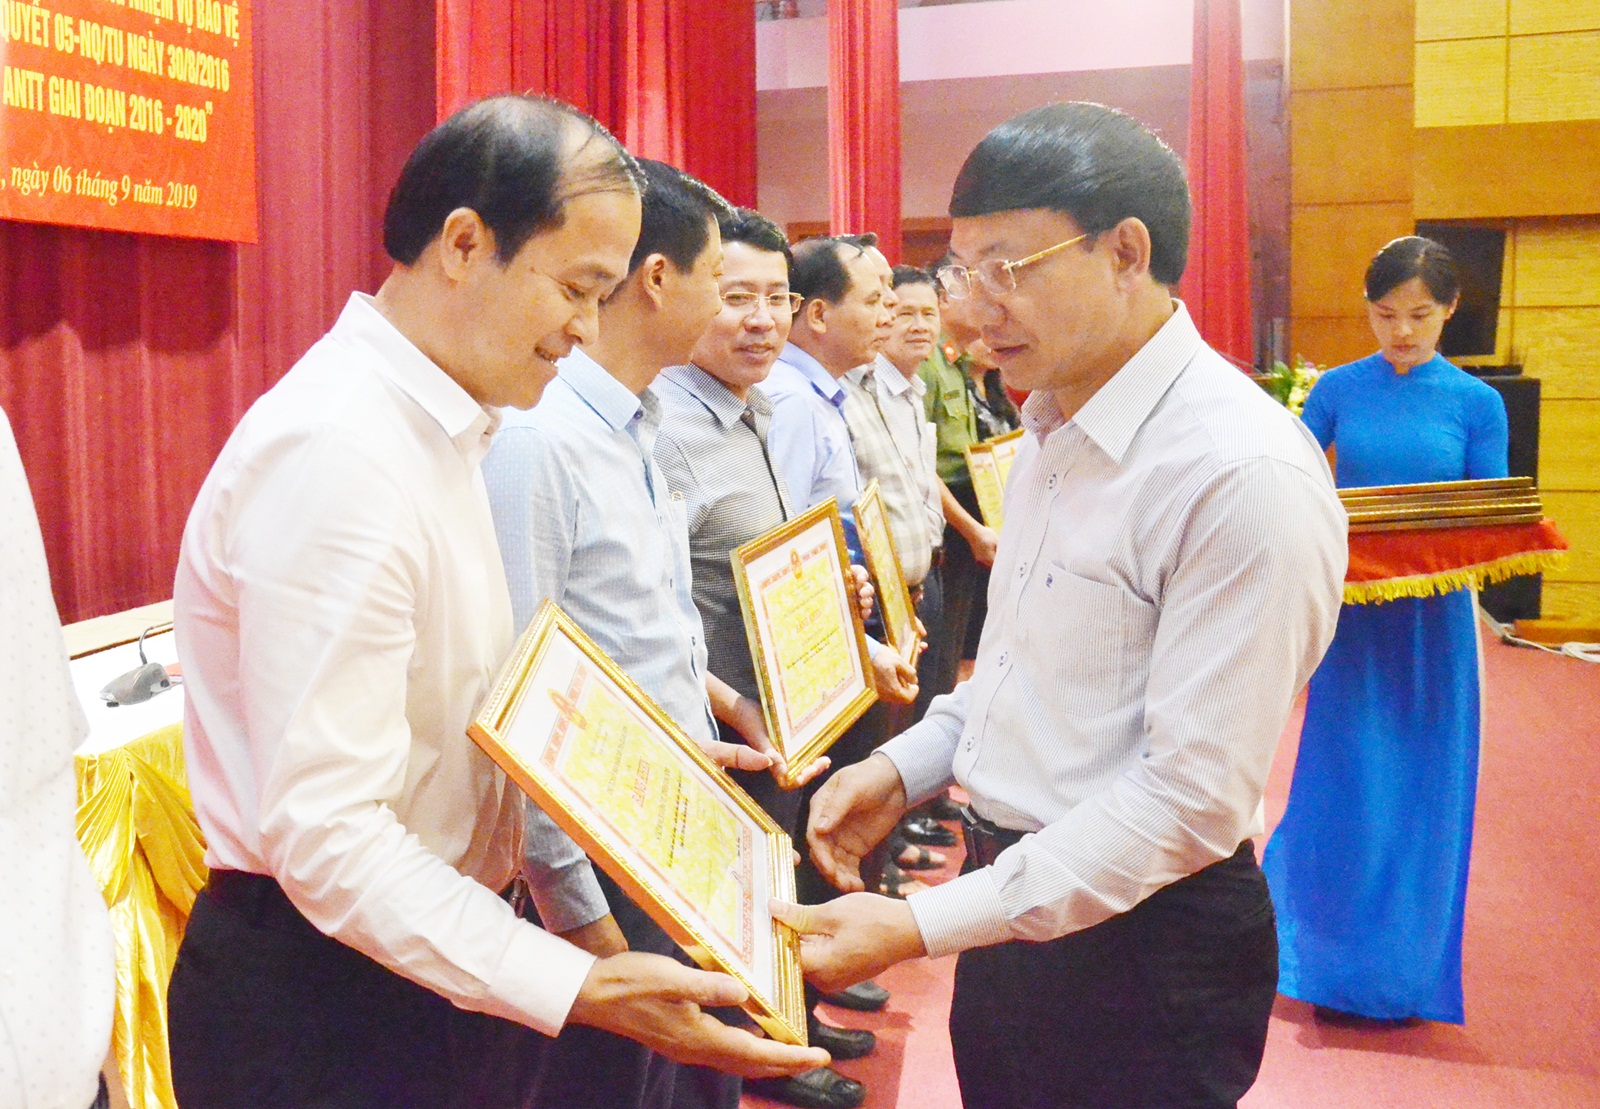 Đồng chí Nguyễn Xuân Ký, Bí thư Tỉnh uỷ, Chủ tịch HĐND tỉnh, trao bằng khen của UBND tỉnh cho các tập thể có thành tích xuất sắc trong triển khai các nghị quyết của Ban Thường vụ Tỉnh uỷ.